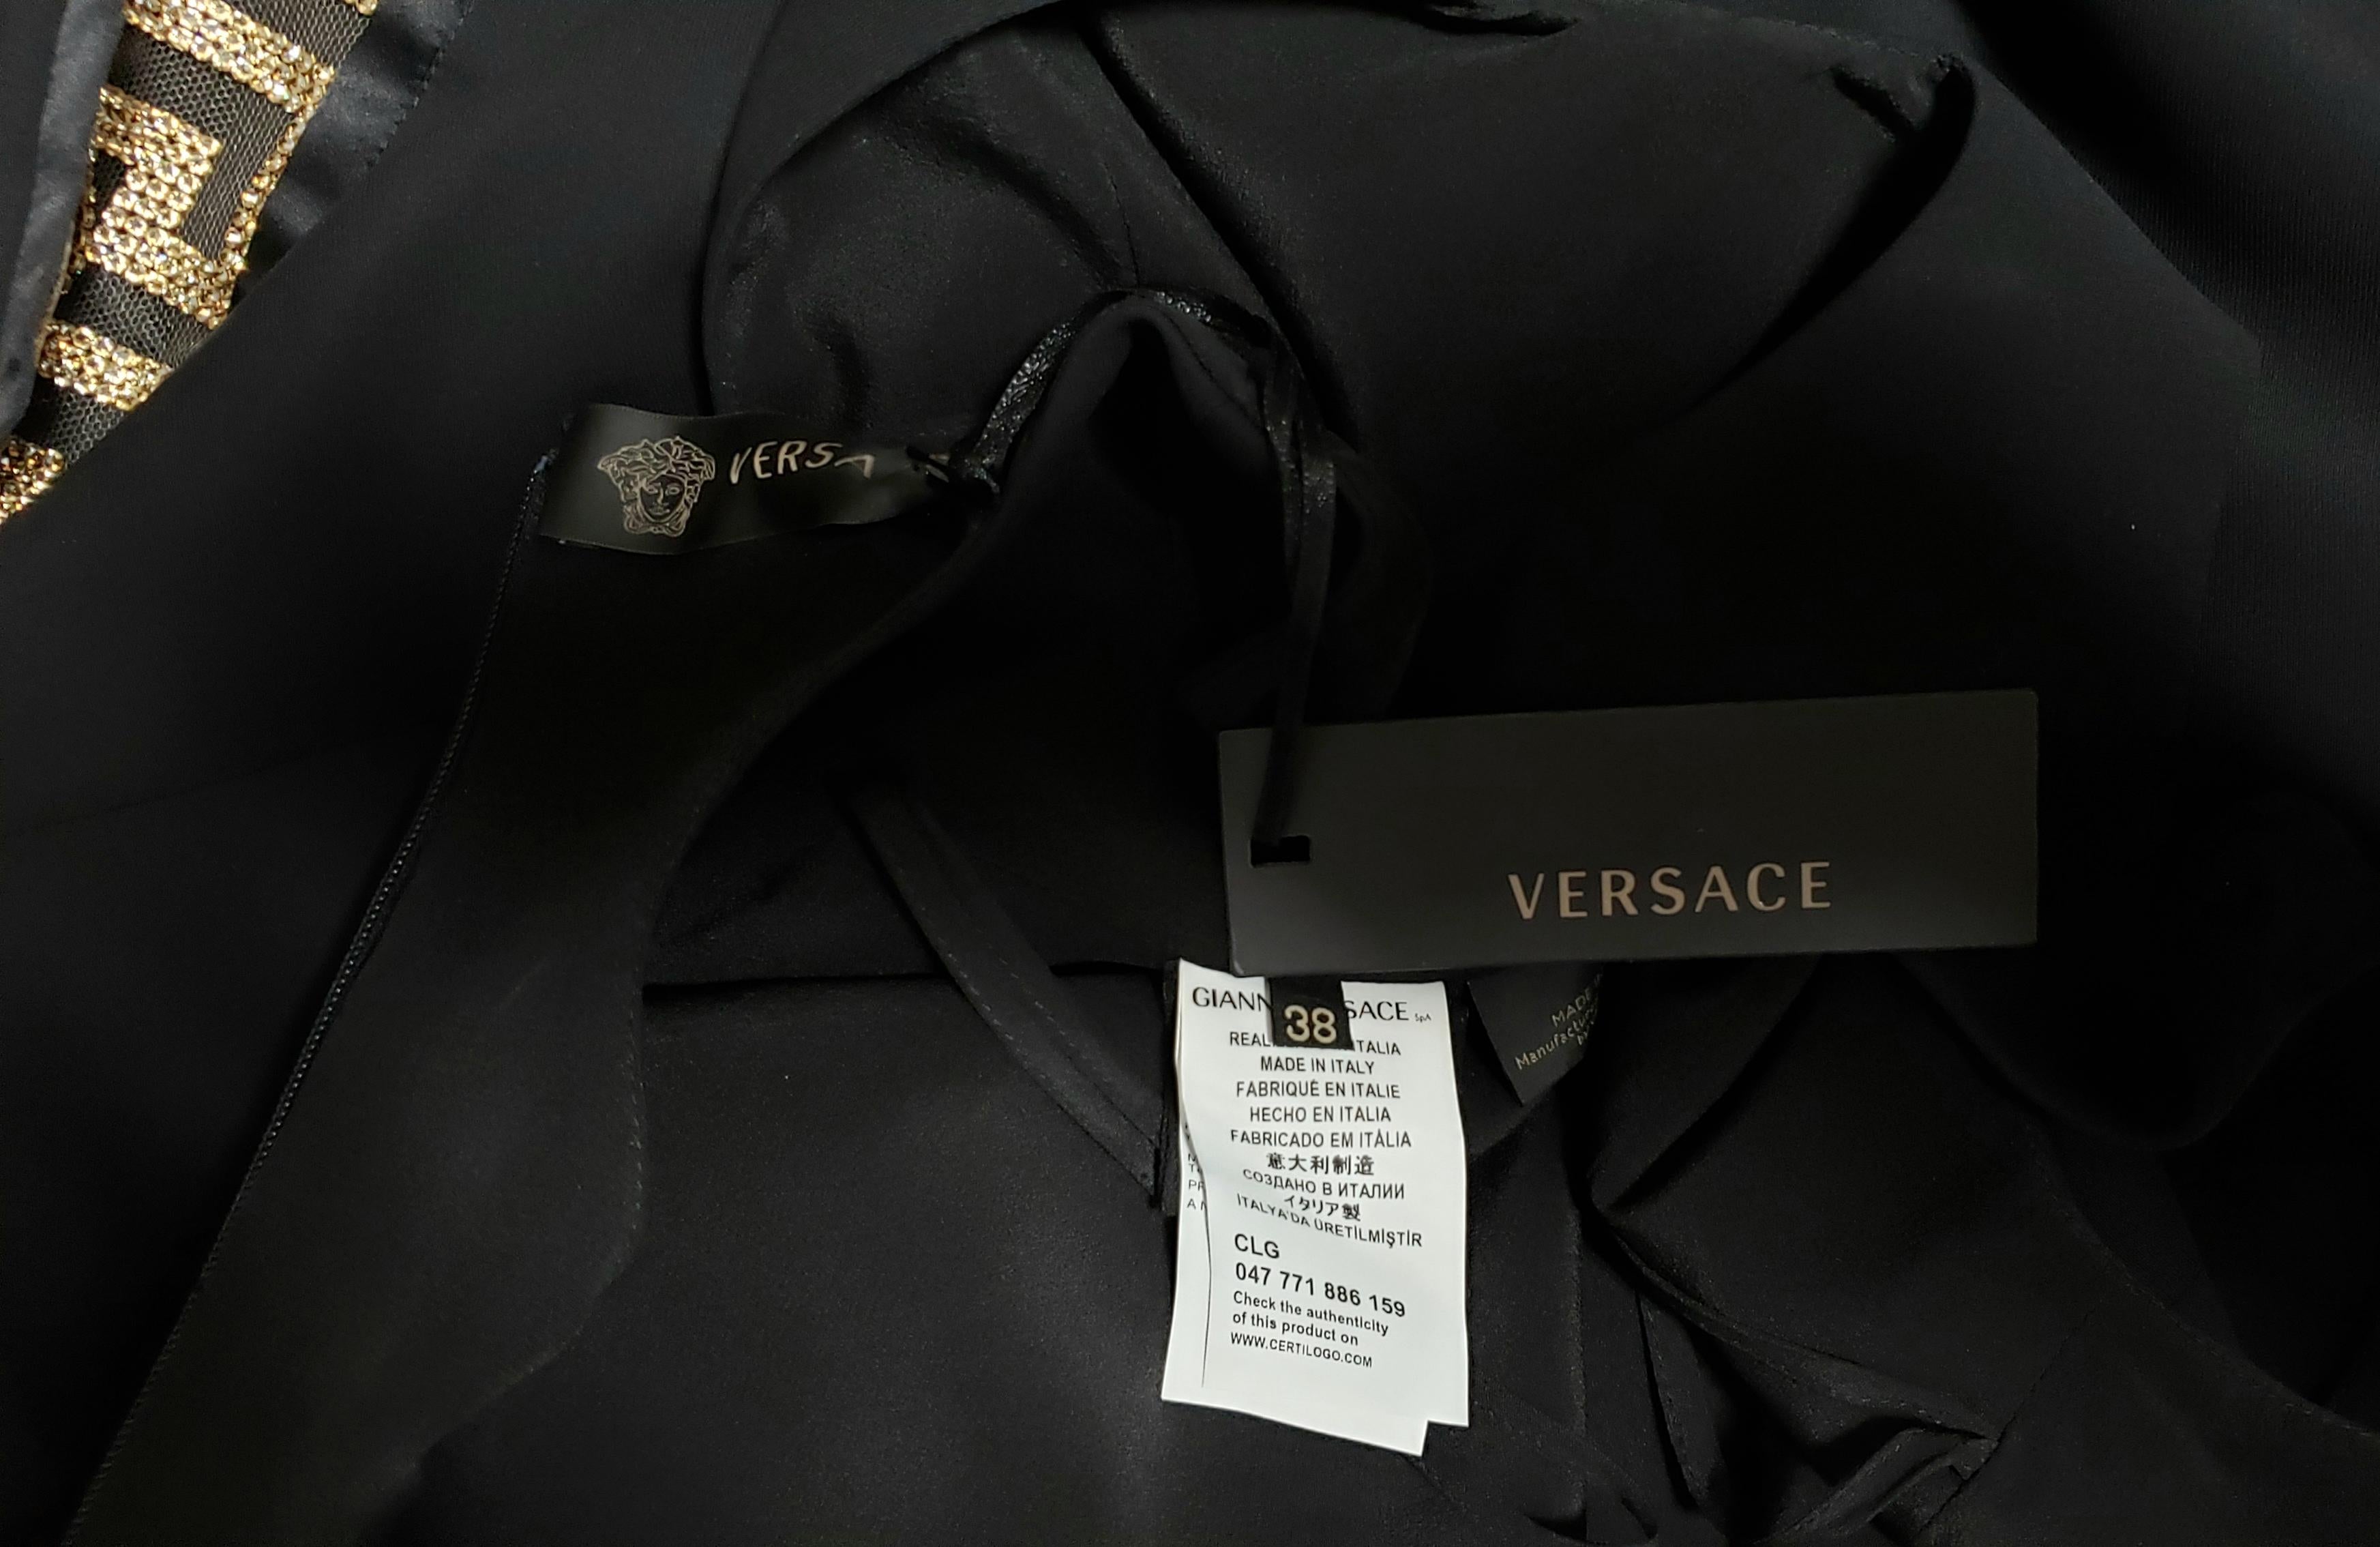 Resort 2015 look # 25 VERSACE BLACK CRYSTAL-EMBELLISHED SILK-CADY DRESS 38 - 2 For Sale 8